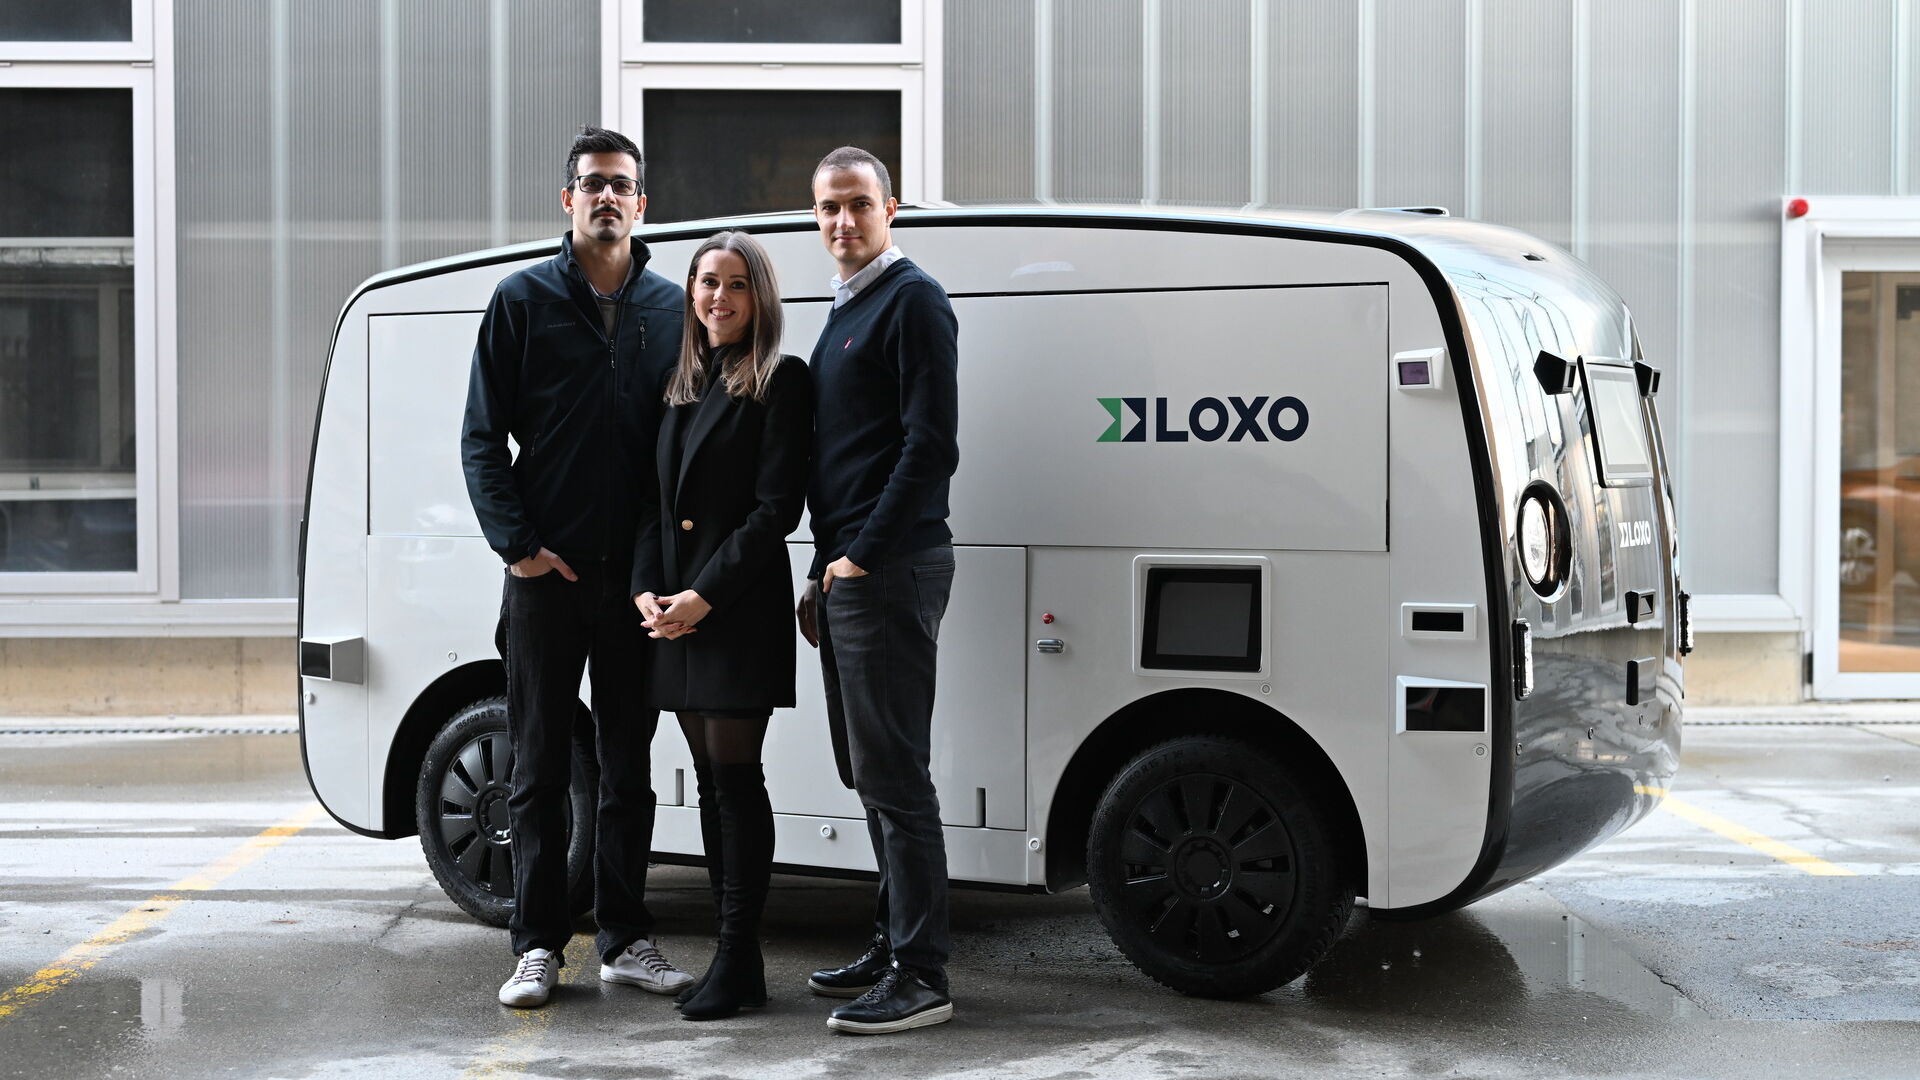 LOXO: قام أمين أميني ، ولارا أميني-رنتش ، وكلاوديو بانيزا ، مؤسسو شركة LOXO الناشئة في برن ، ببناء Alpha بالكامل في سويسرا ، وهي شاحنة ذاتية القيادة لعمليات التسليم قصيرة الأجل.